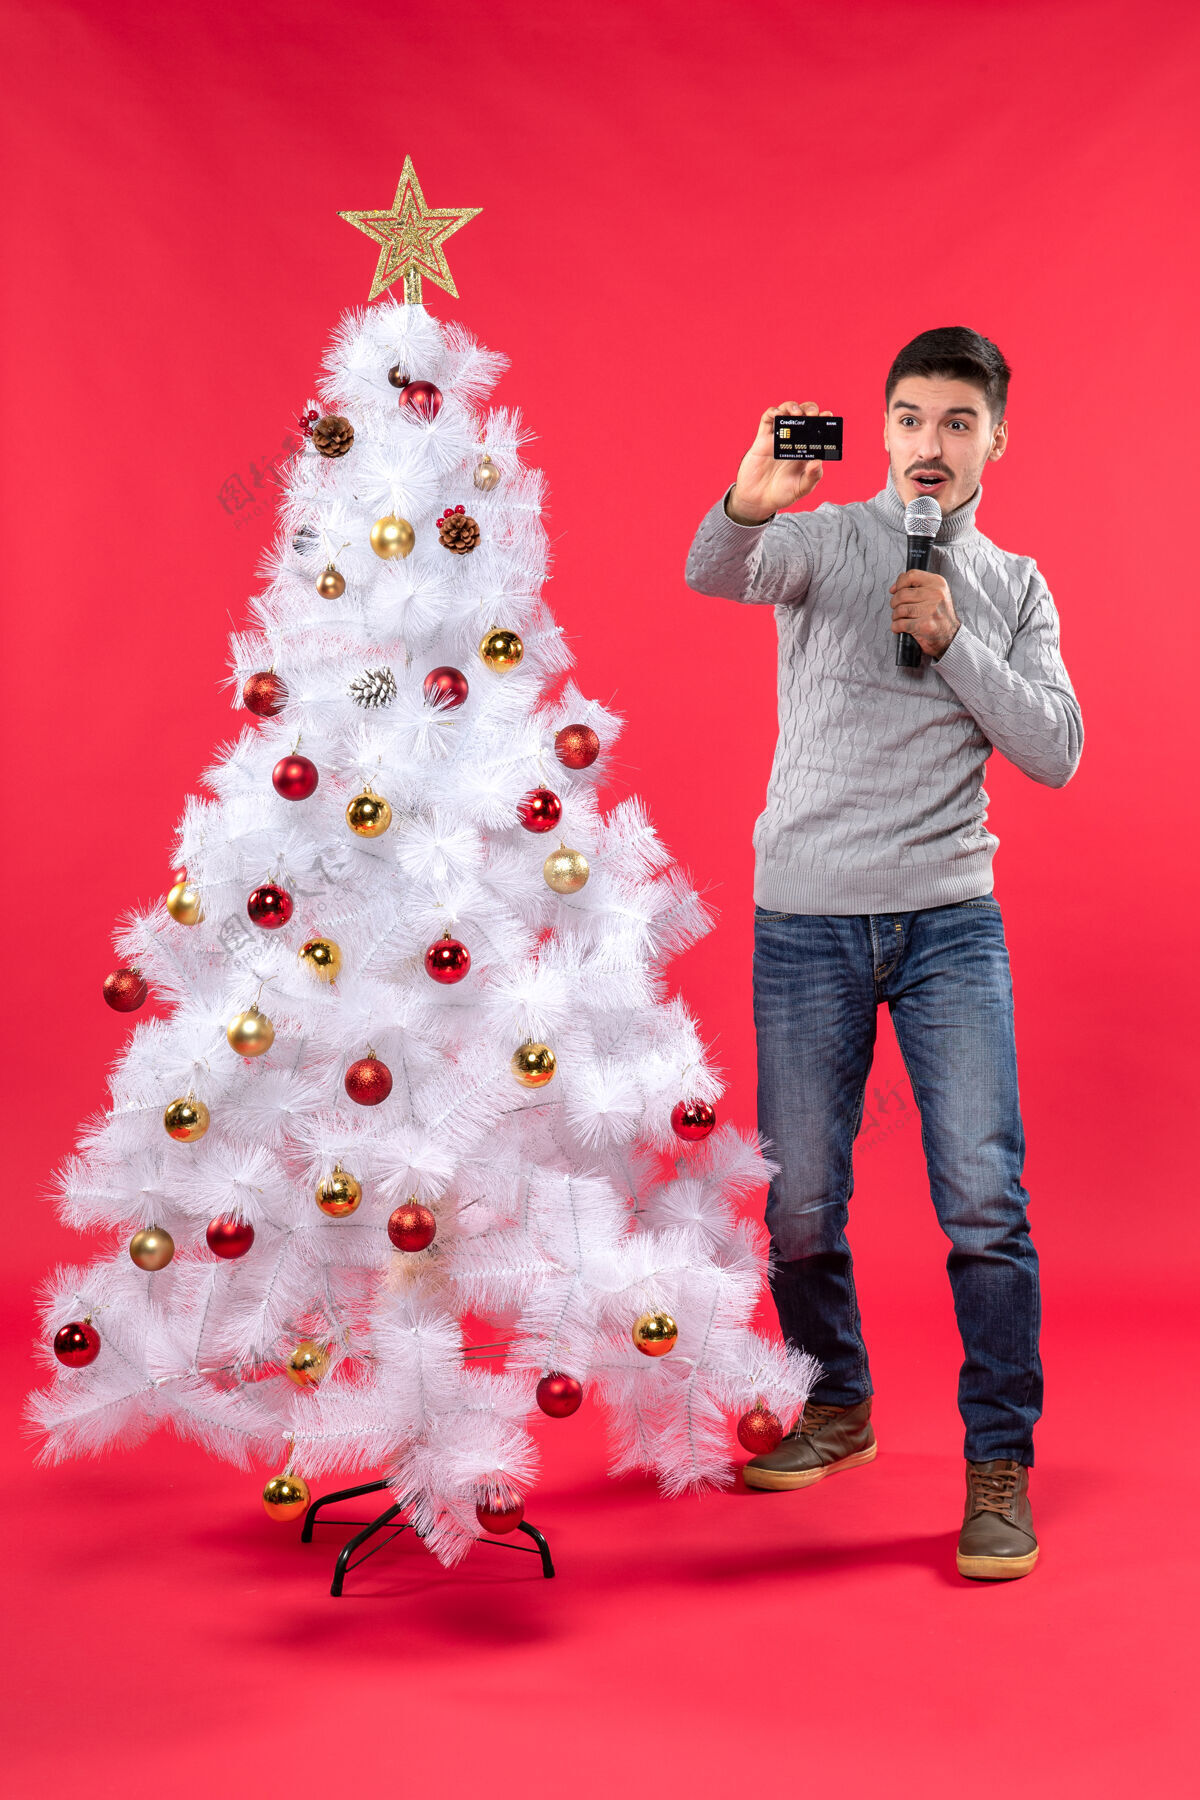 圣诞圣诞节的气氛 自信的家伙穿着牛仔裤站在装饰圣诞树附近 拿着麦克风拍照自信站着微笑